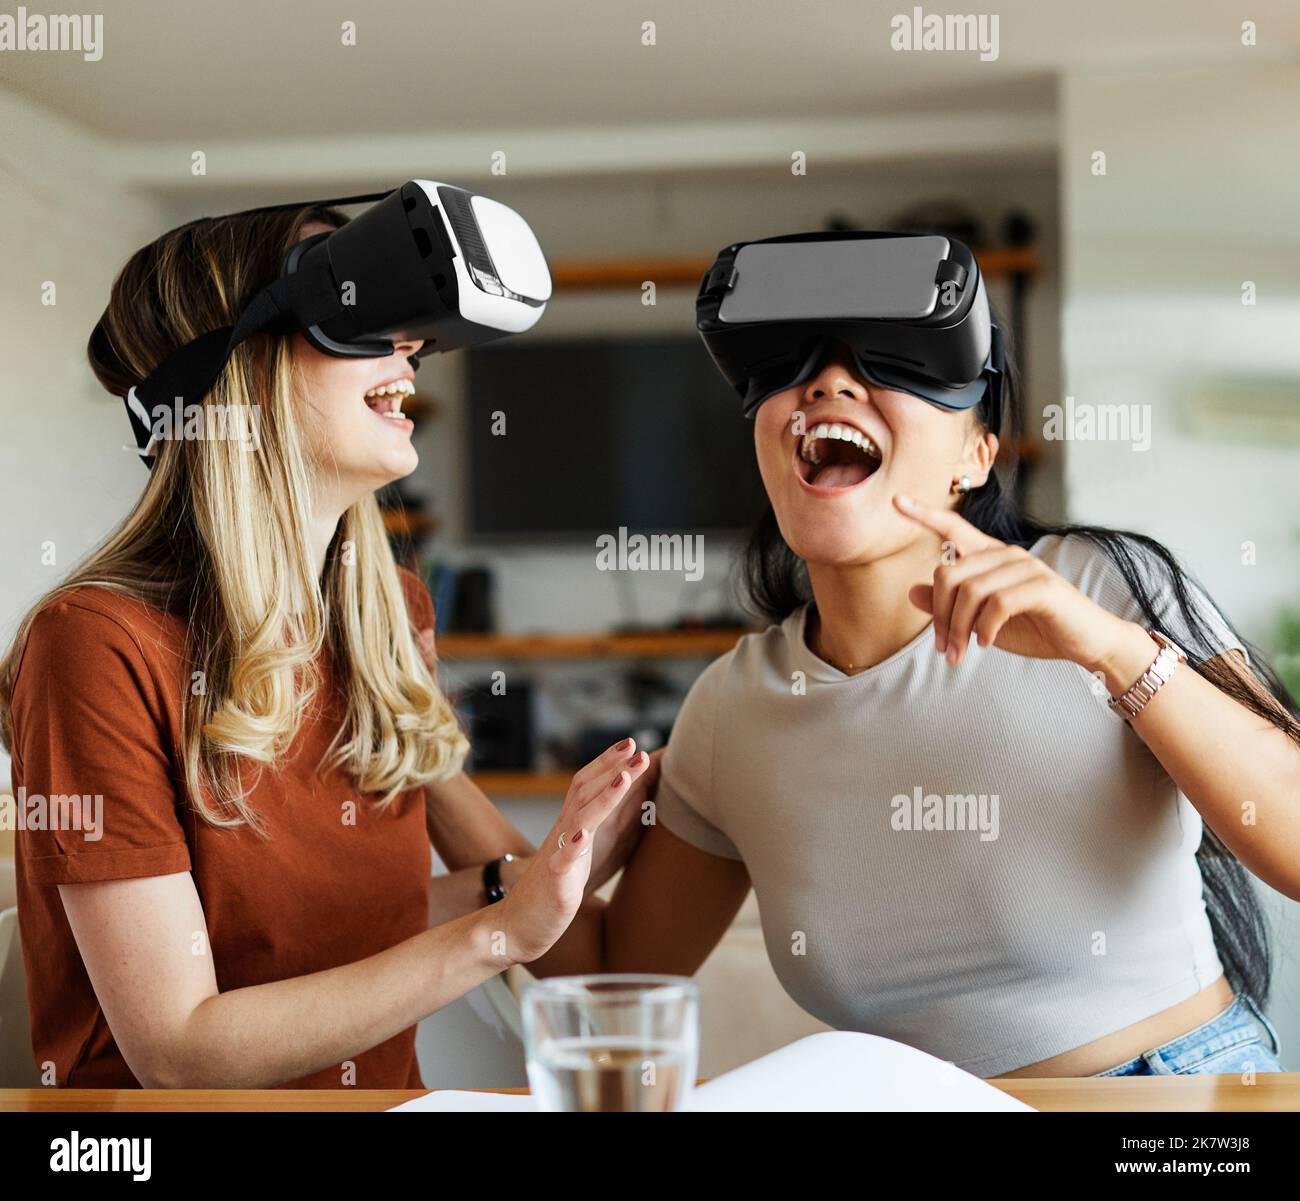 diversión tecnología vr tecnología chica virtual innovación digital auriculares realidad vidrio mujer gafas dispositivo femenino entretenimiento vídeo futurista joven moderno Foto de stock